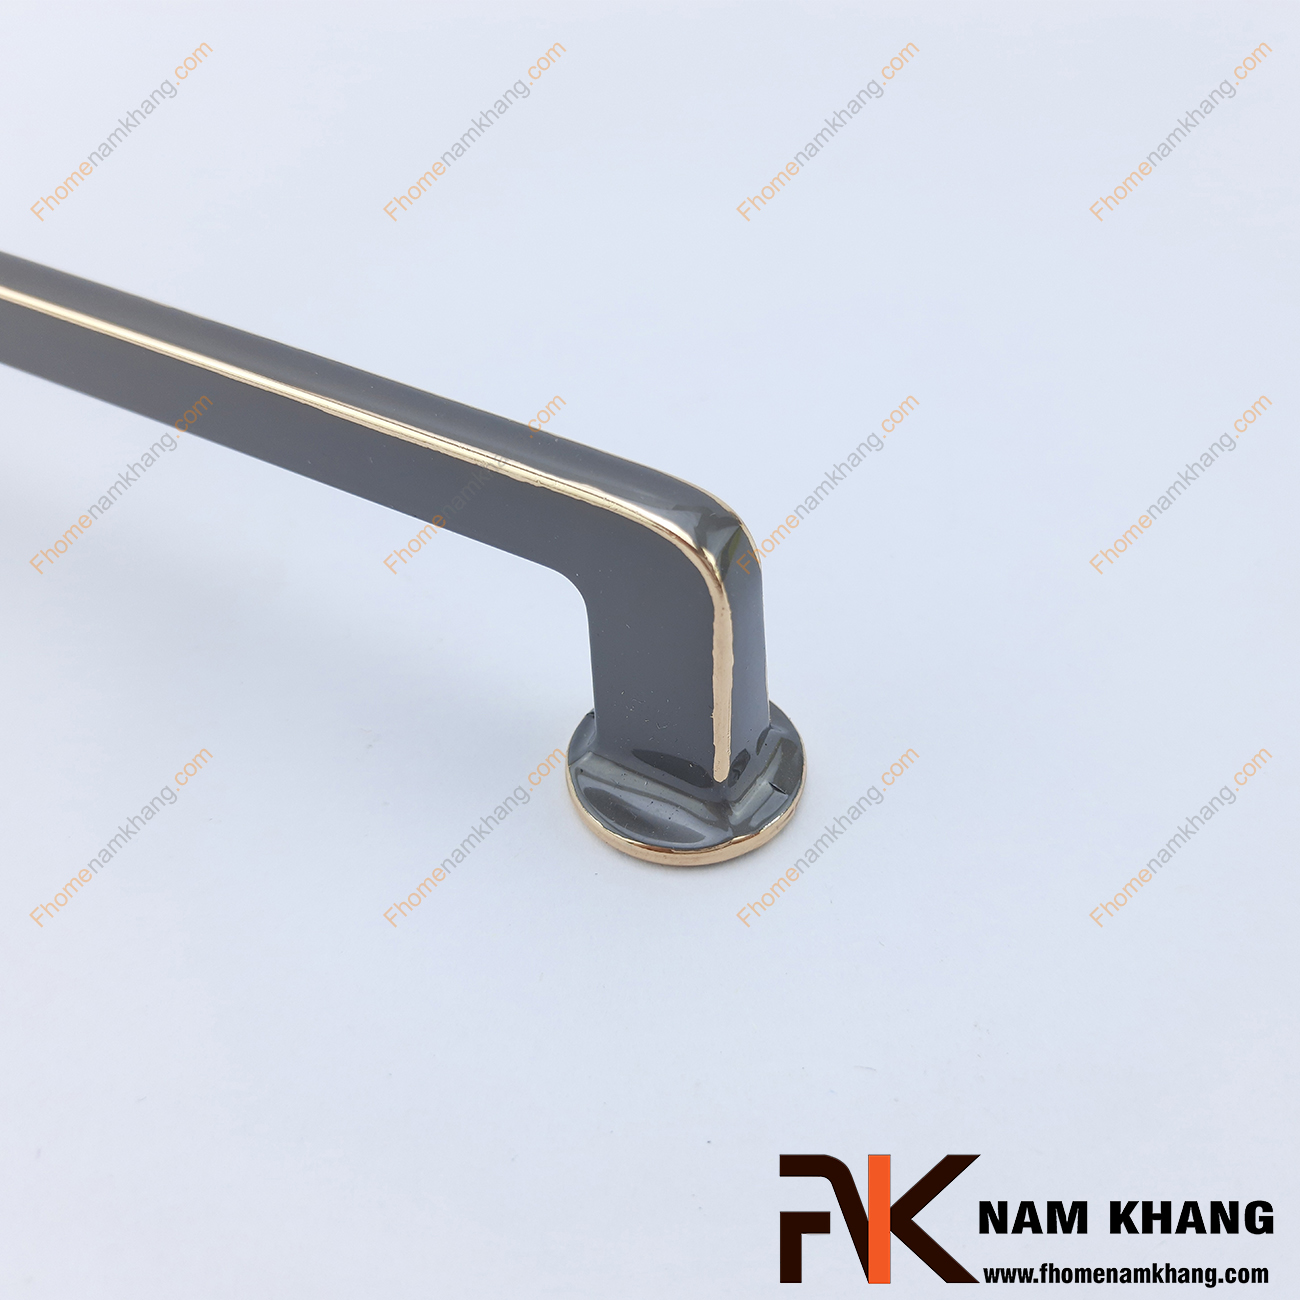 Tay nắm tủ dạng trơn màu ghi vàng NK400-GV là một thiết kế tay nắm tủ có thiết kế khá đơn giản. Bề ngoài của tay nắm dạng một thanh tròn nguyên khối được xử lý bo tròn các góc cạnh hiện đại. 